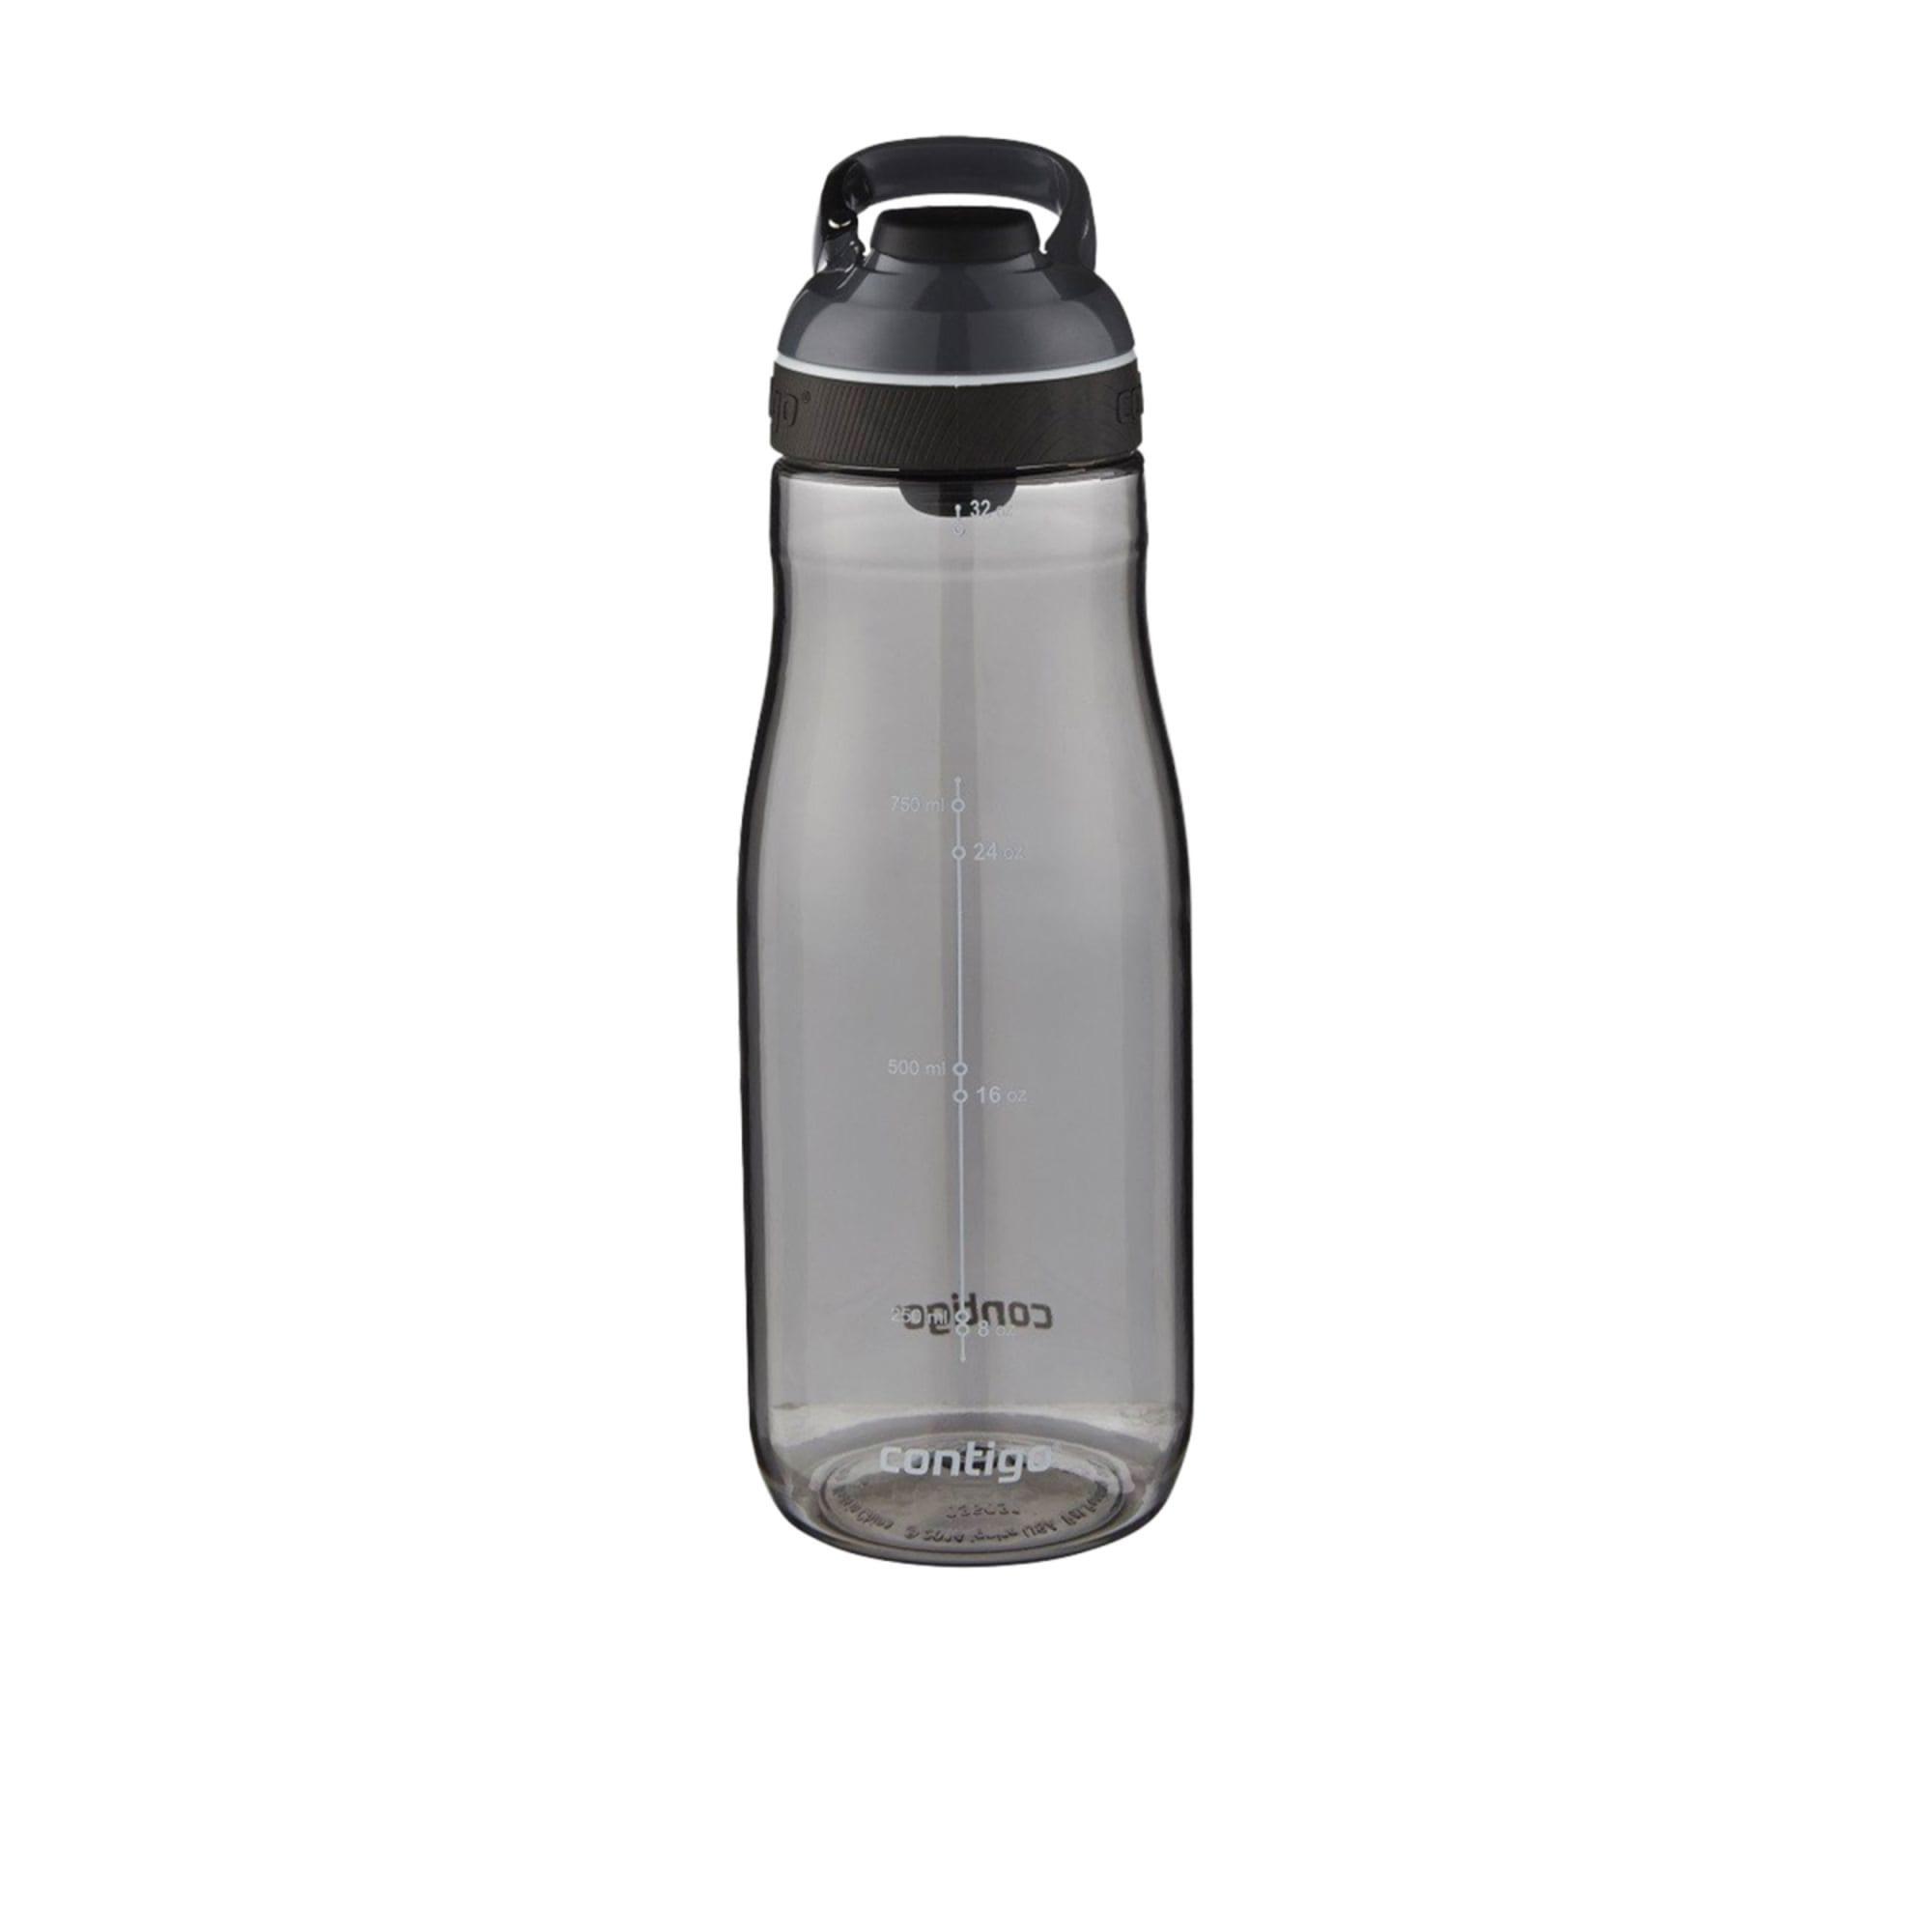 Contigo Cortland Autoseal Water Bottle 946ml Smoke Image 1